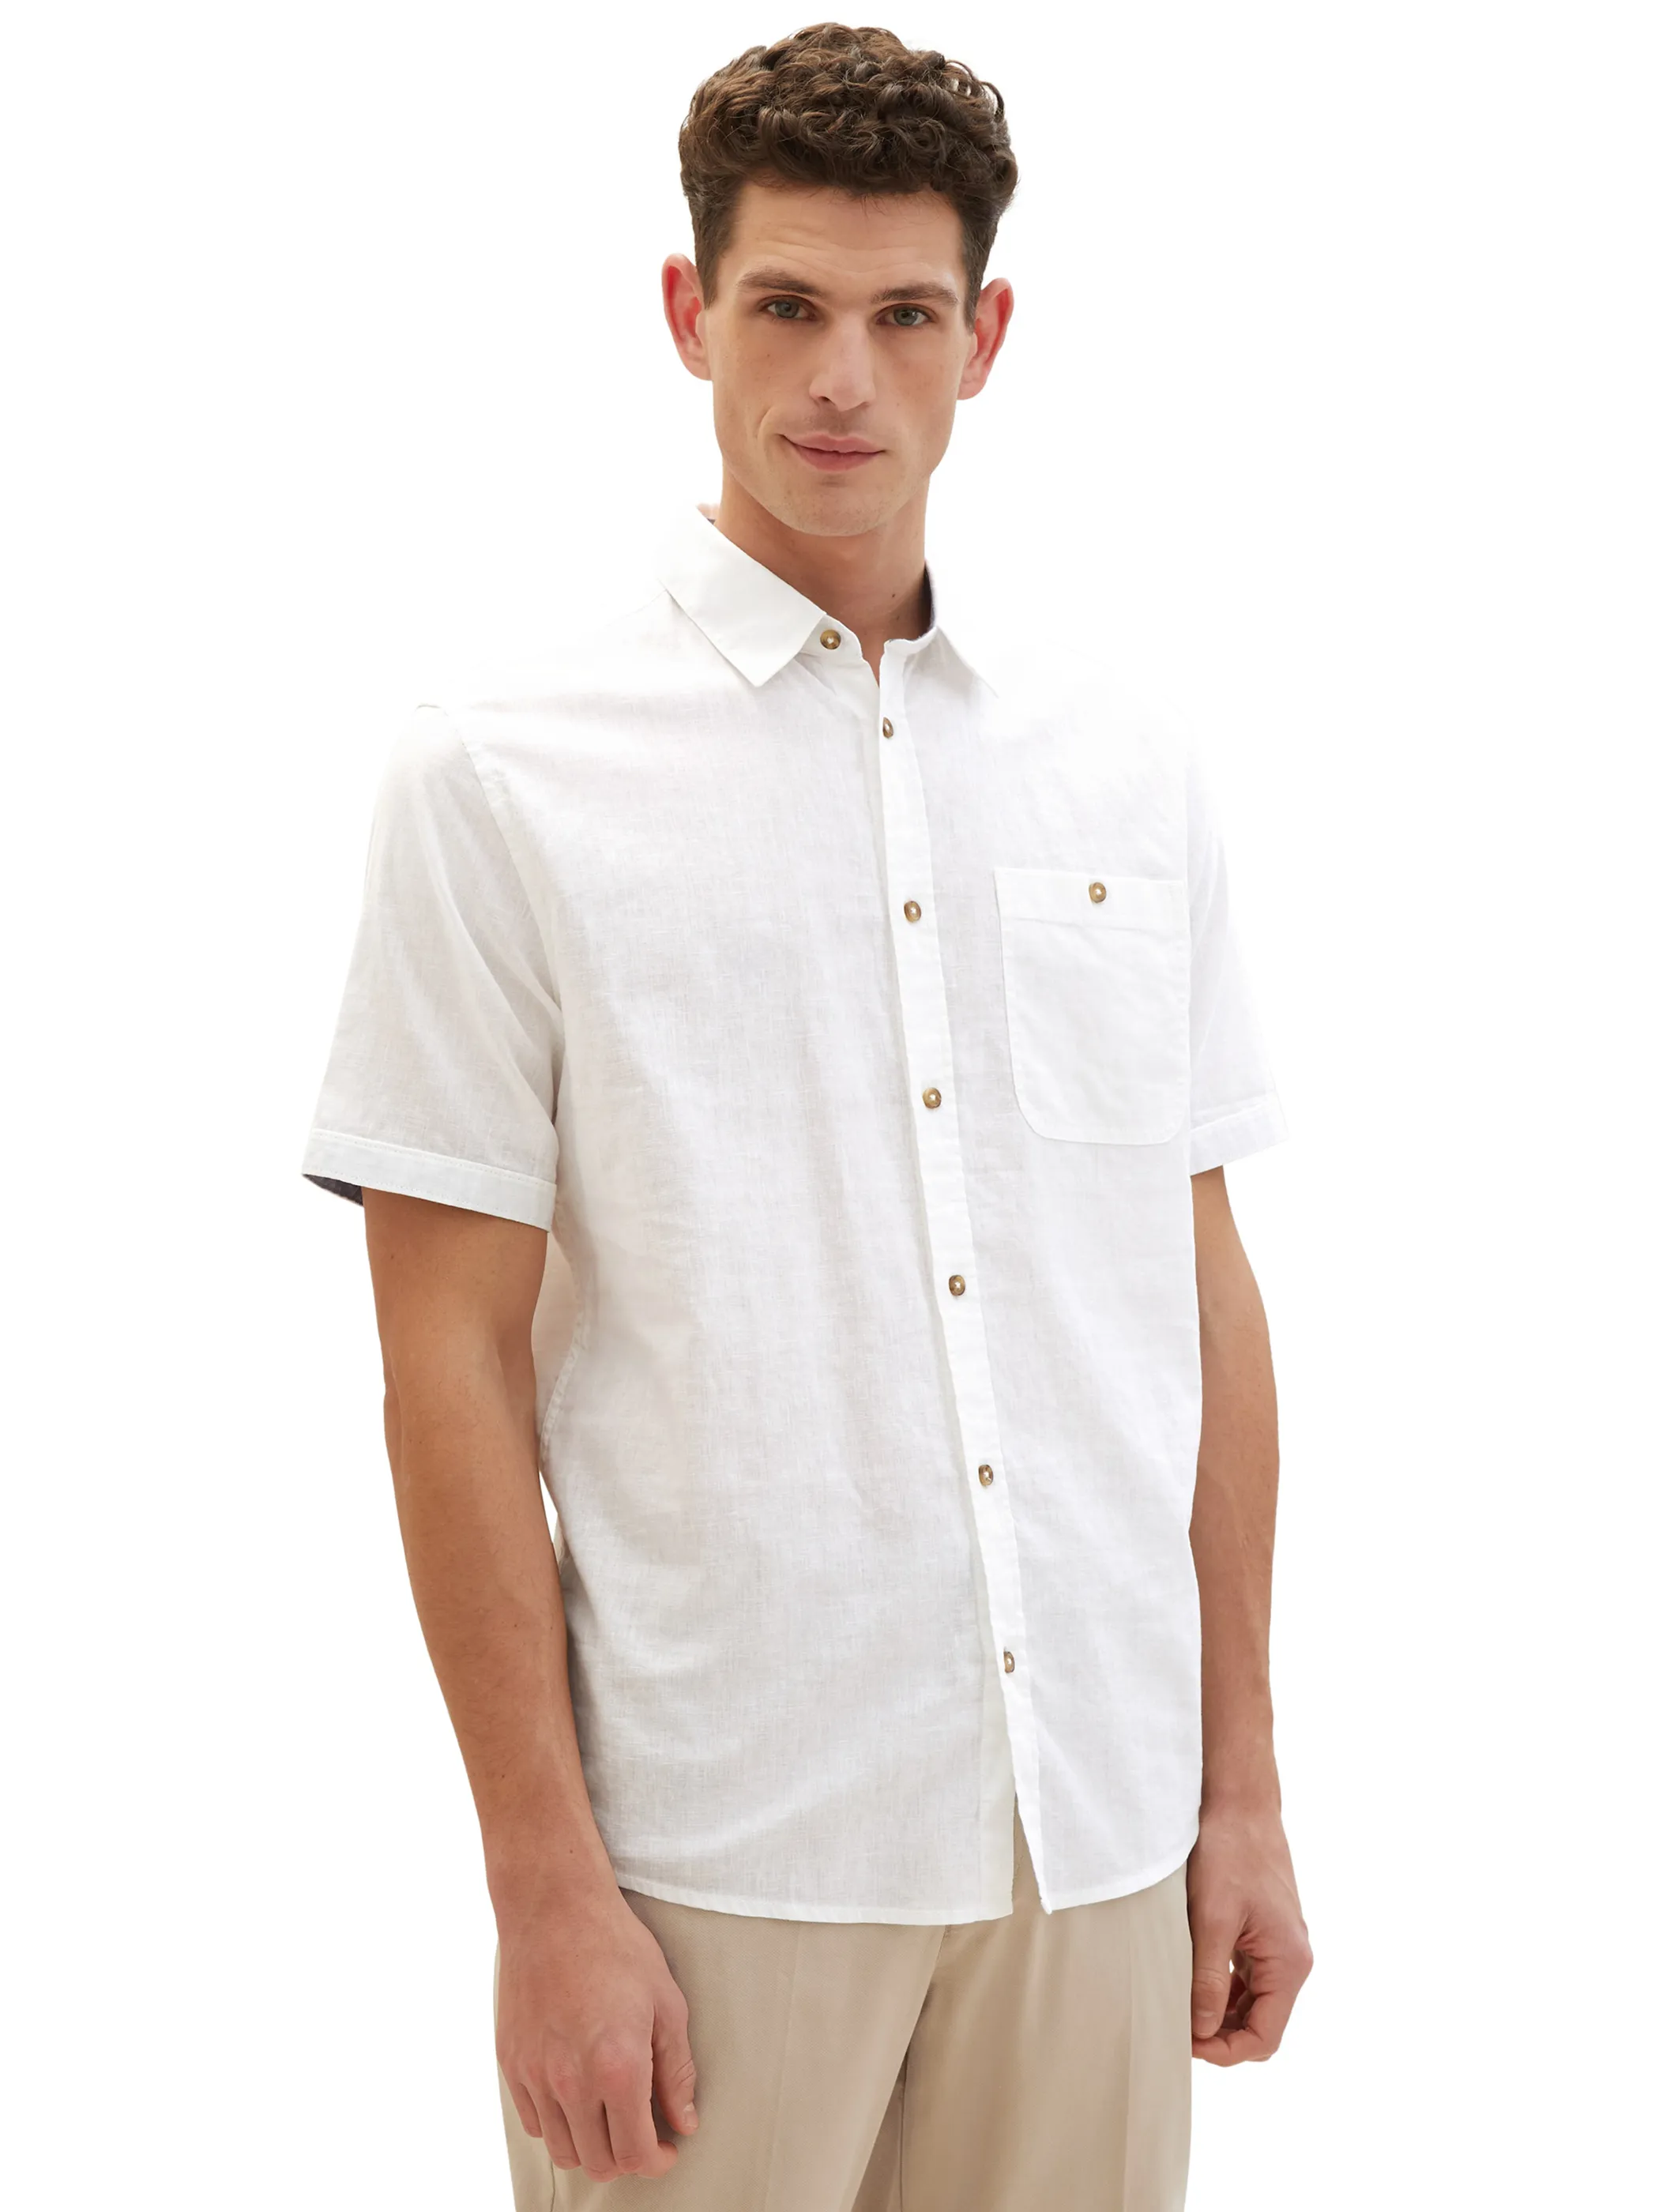 Tom Tailor 1042351 NOS cotton linen shirt Weiß 890939 20000 3